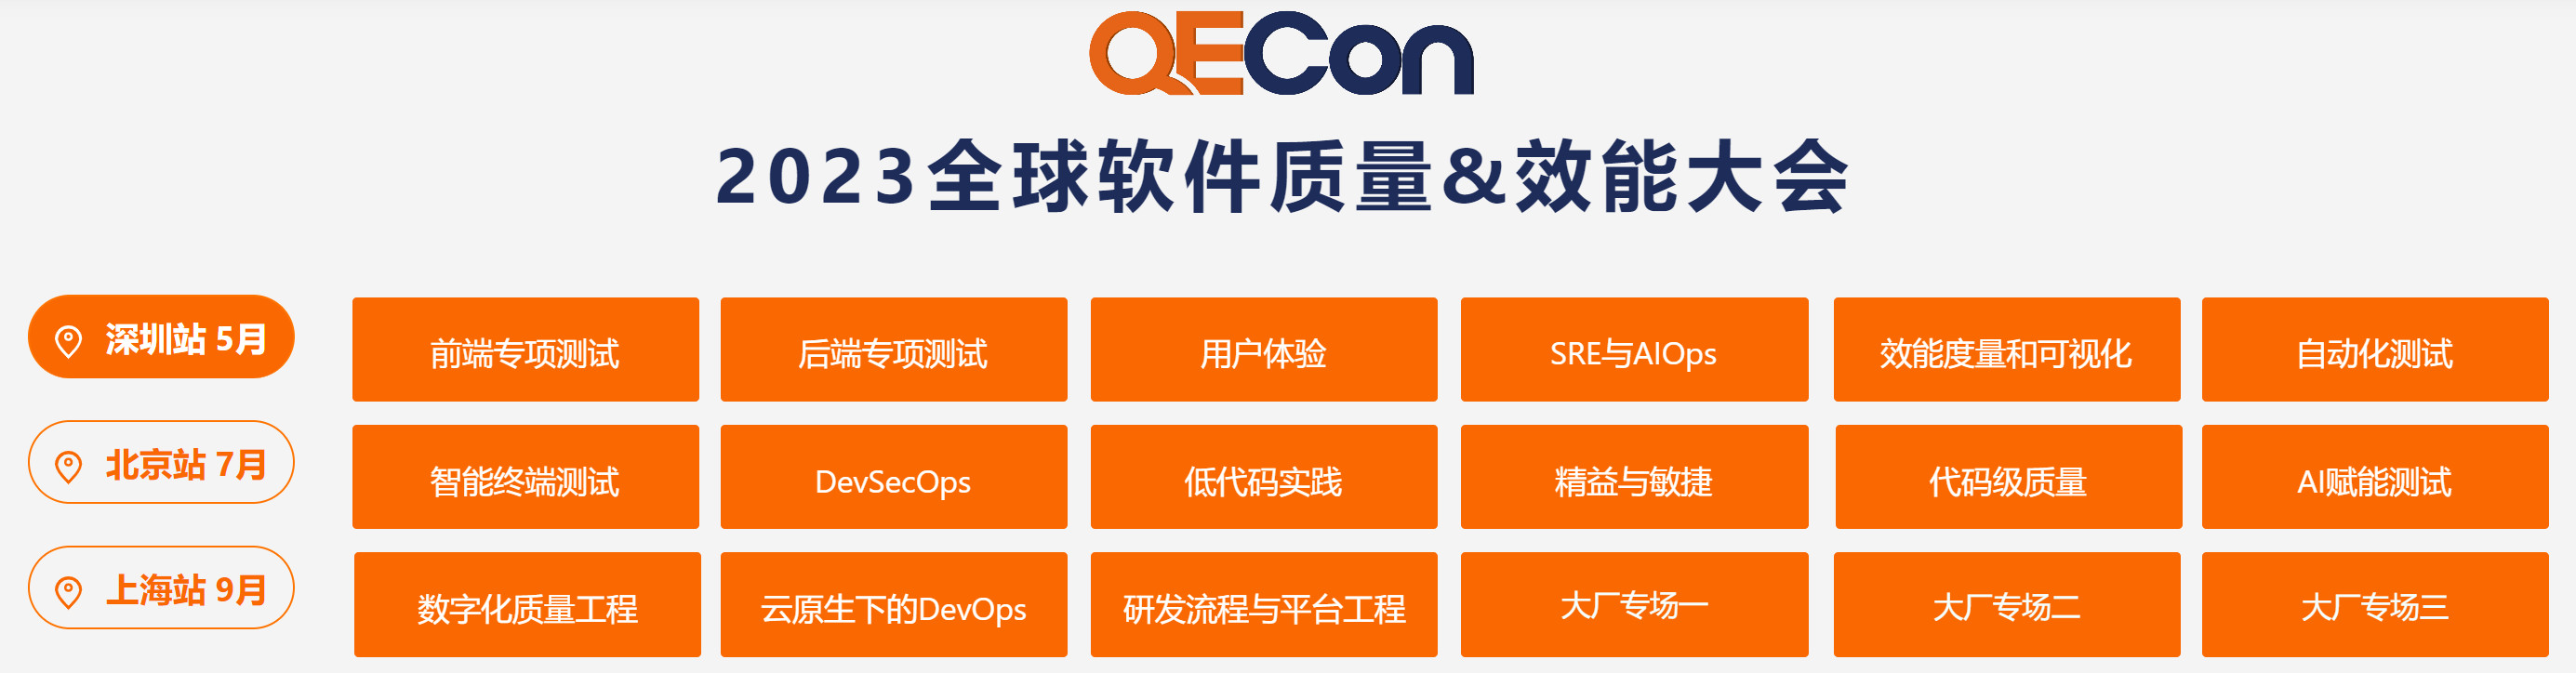 2023QECon全球软件质量&效能大会·深圳站